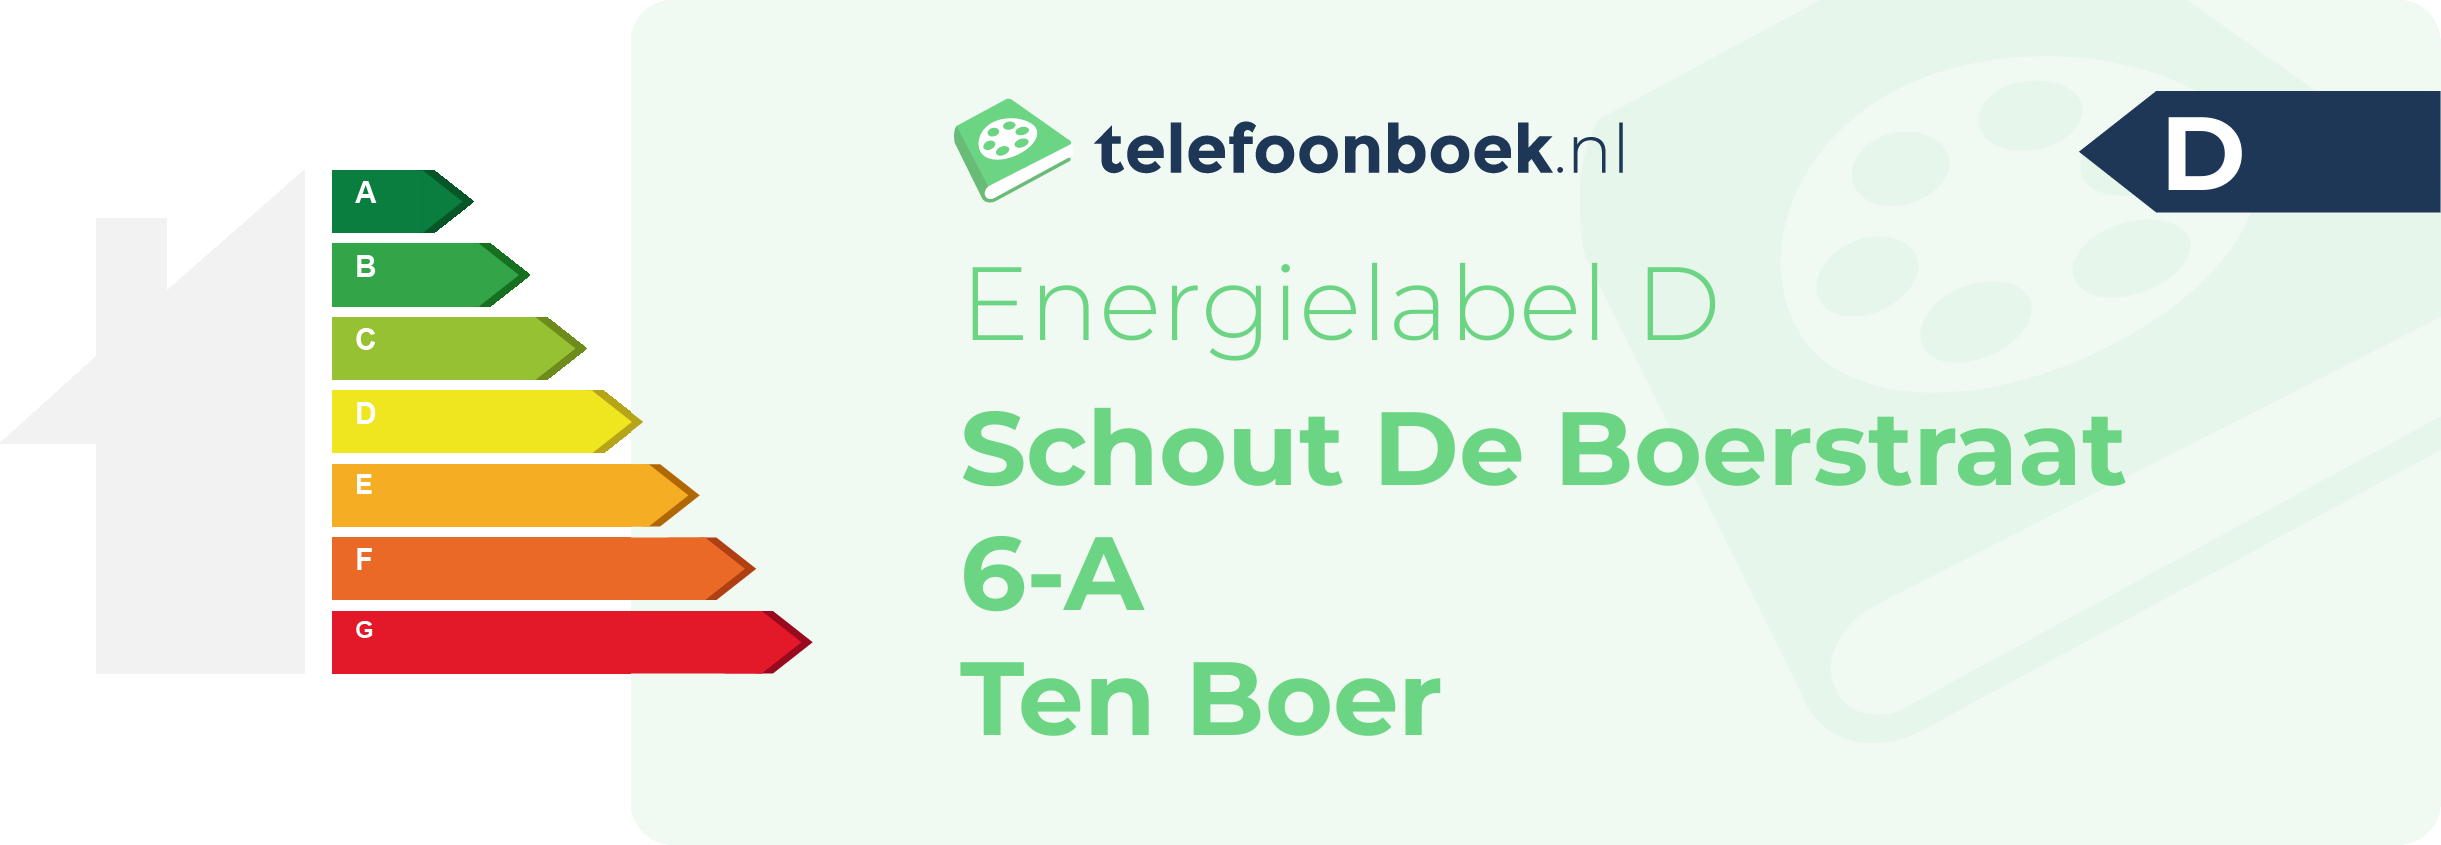 Energielabel Schout De Boerstraat 6-A Ten Boer